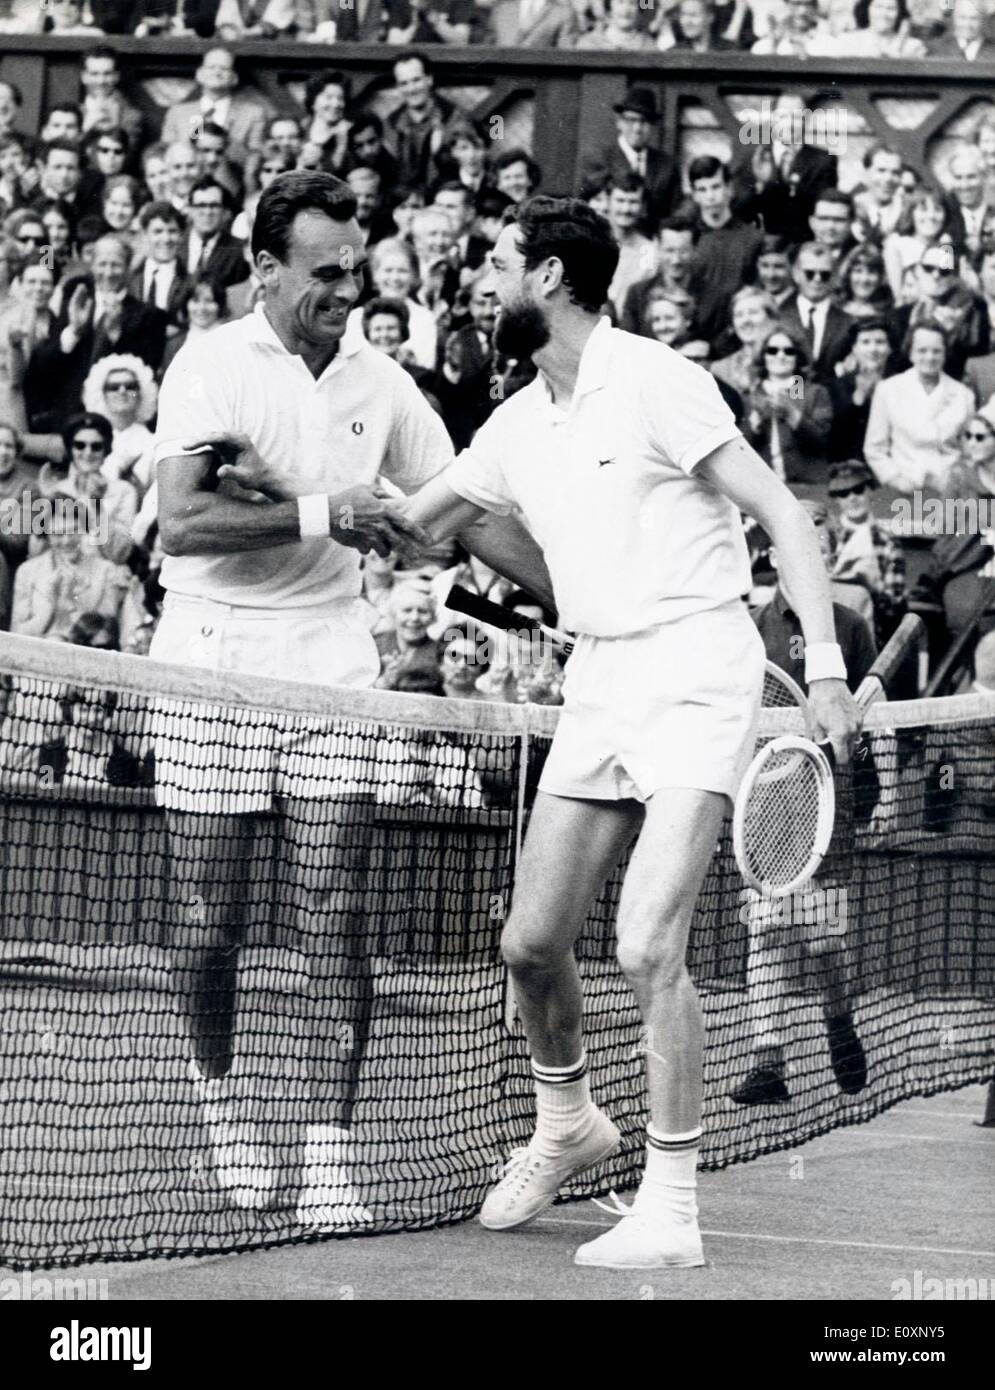 Jun 28, 1967 - Londres, Angleterre, Royaume-Uni - VIC SEIXAS (L) reçoit les félicitations de JORGEN ULRICH pendant le championnat de tennis de Wimbledon. Seixas allait remporter le match. Banque D'Images